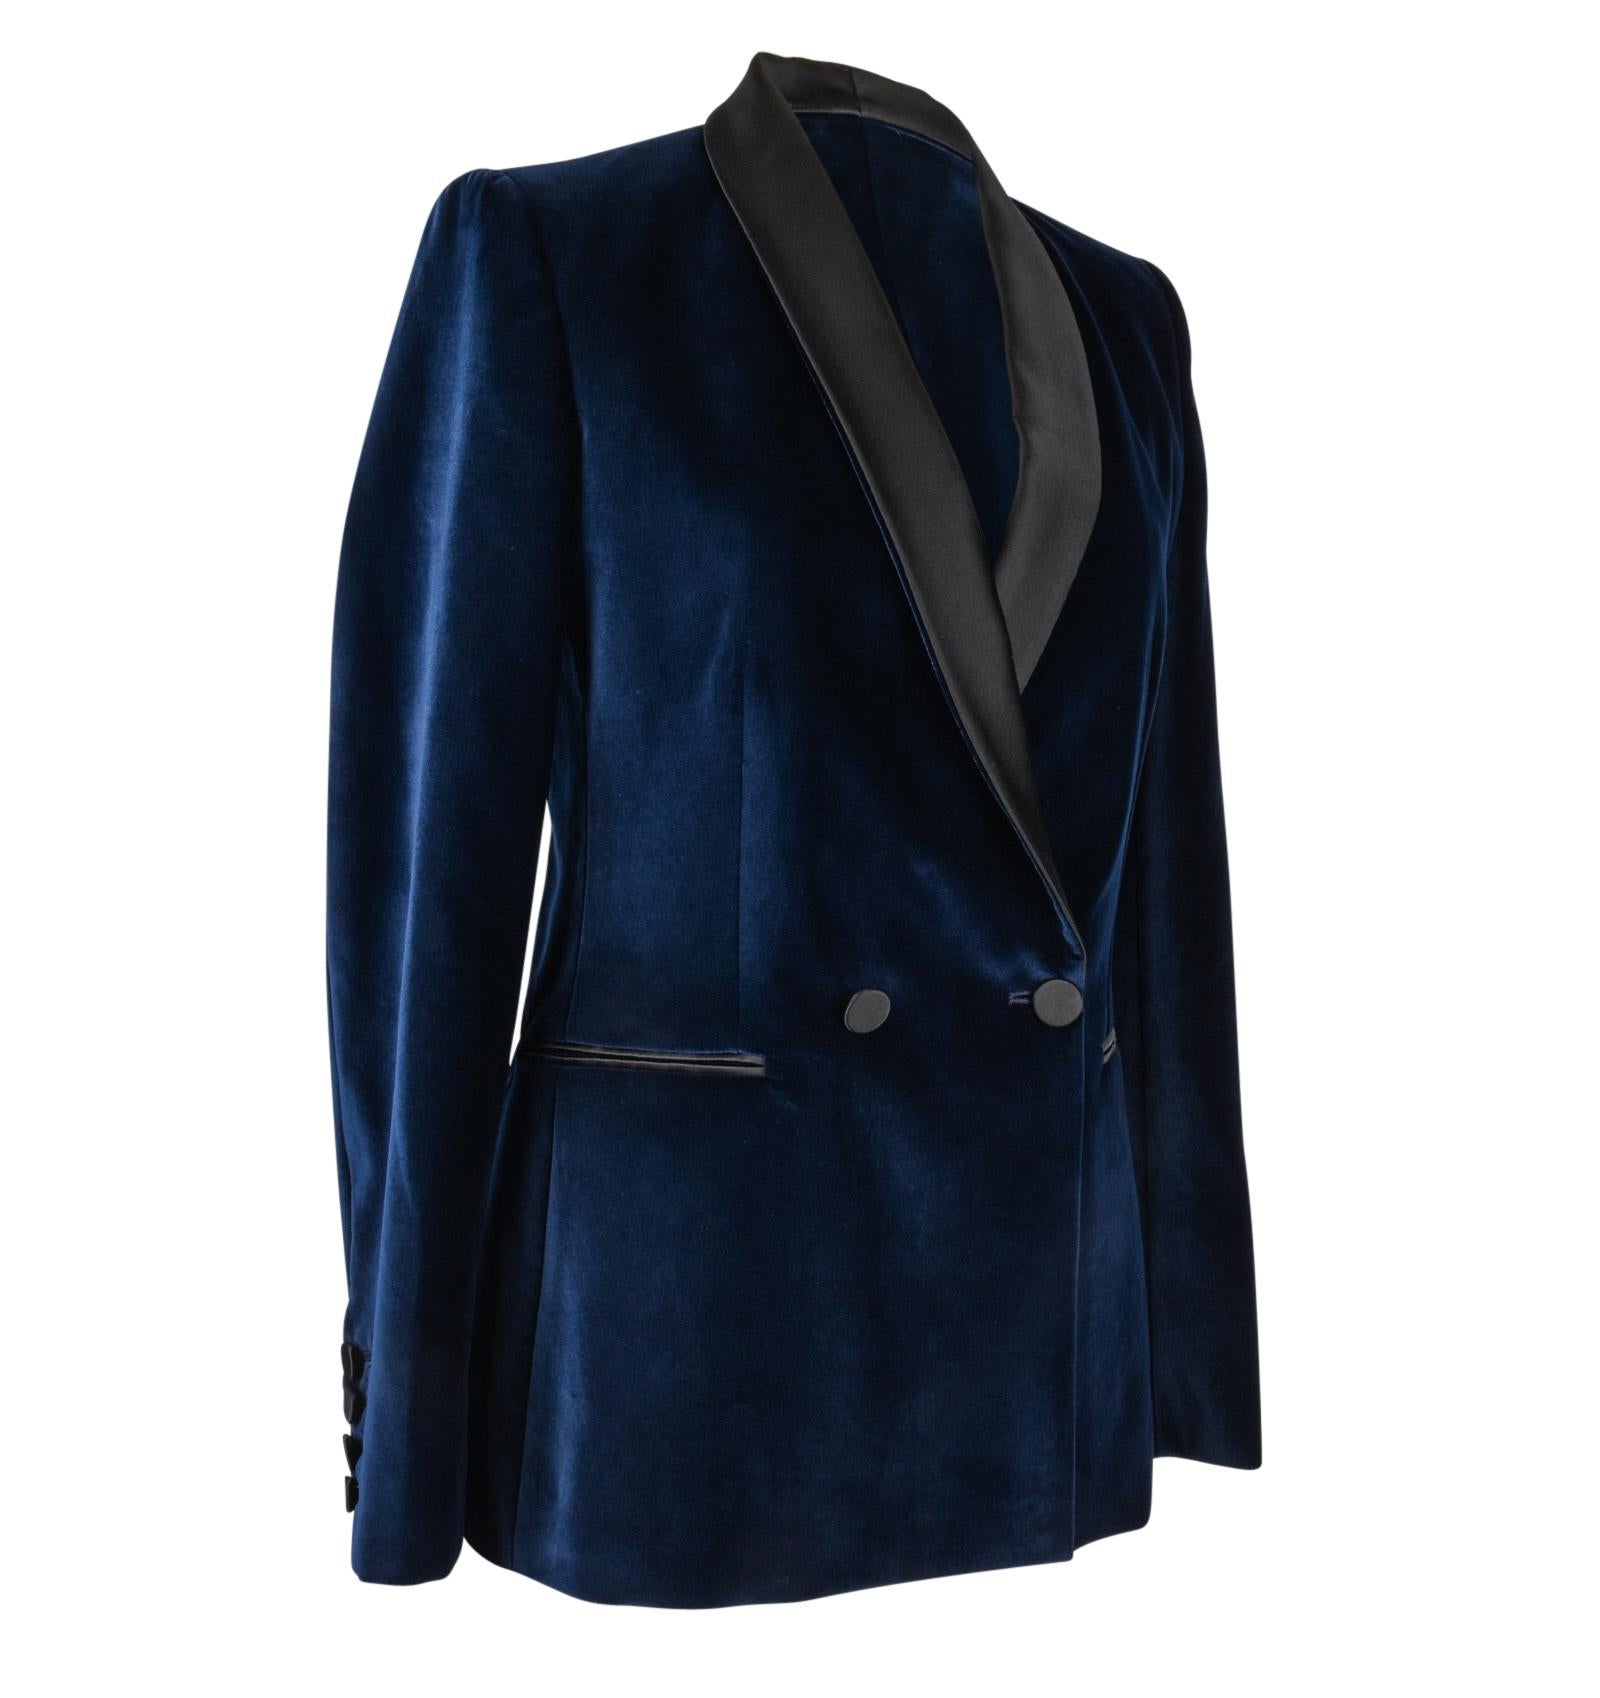 Stella McCartney Jacket Tuxedo Style Navy Velvet Black Trim 38 / 6